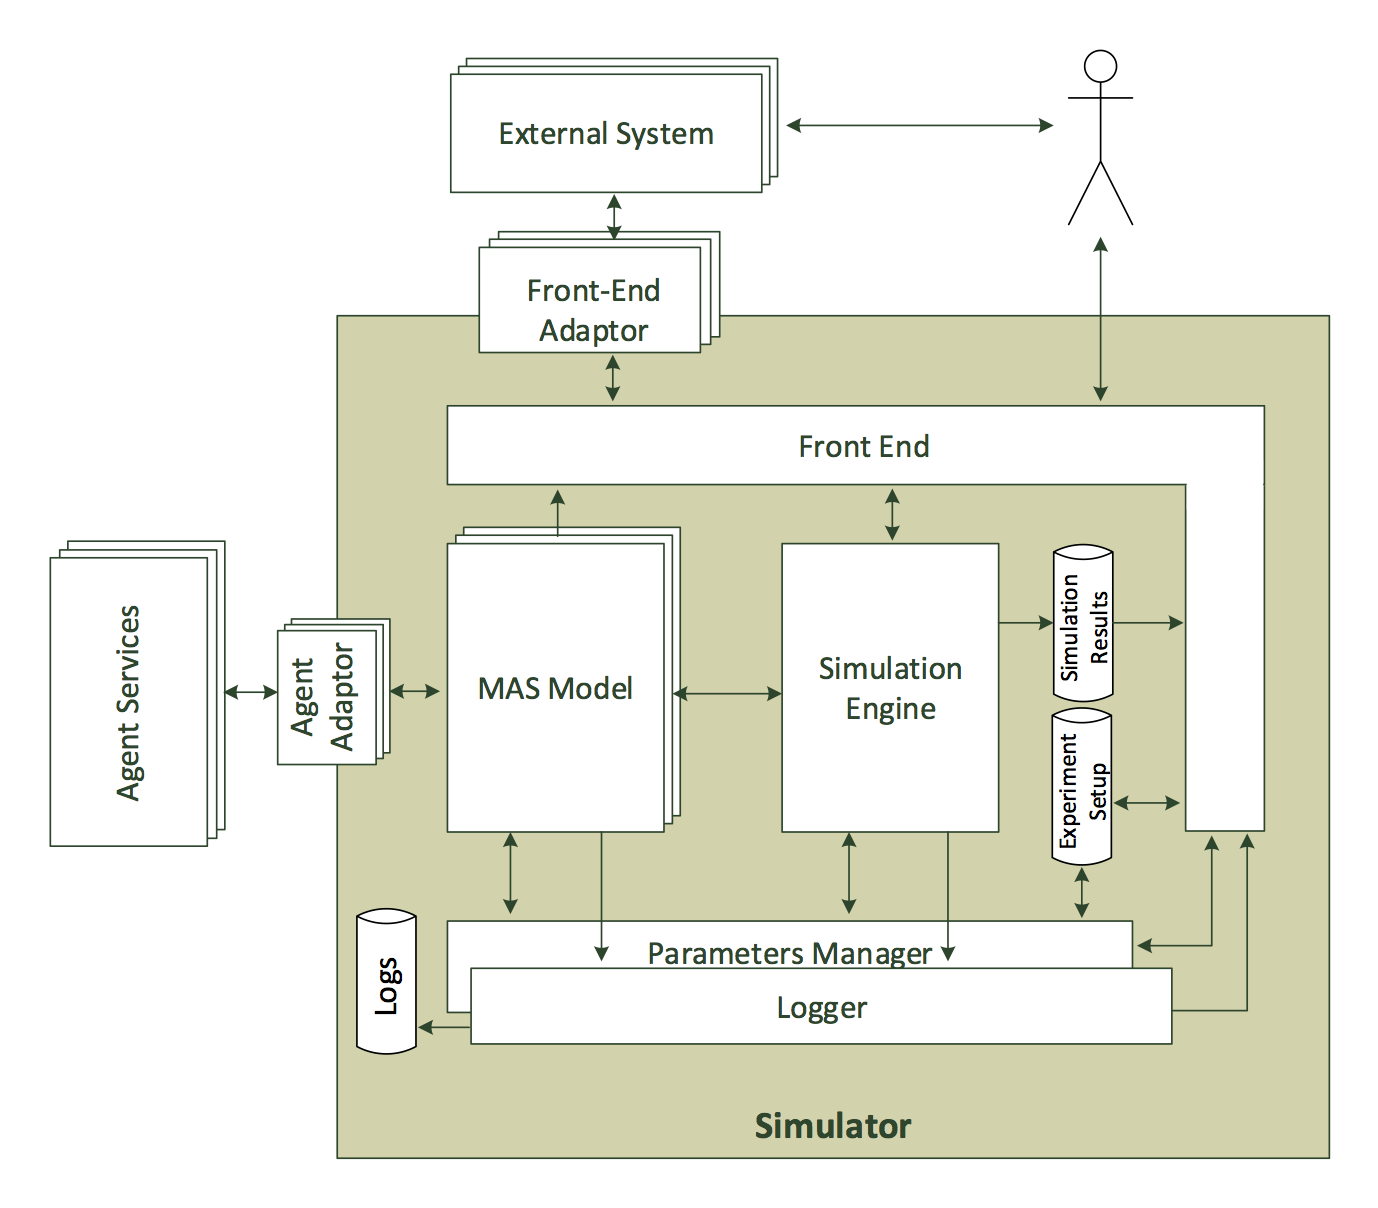 The AIMS simulator architecture